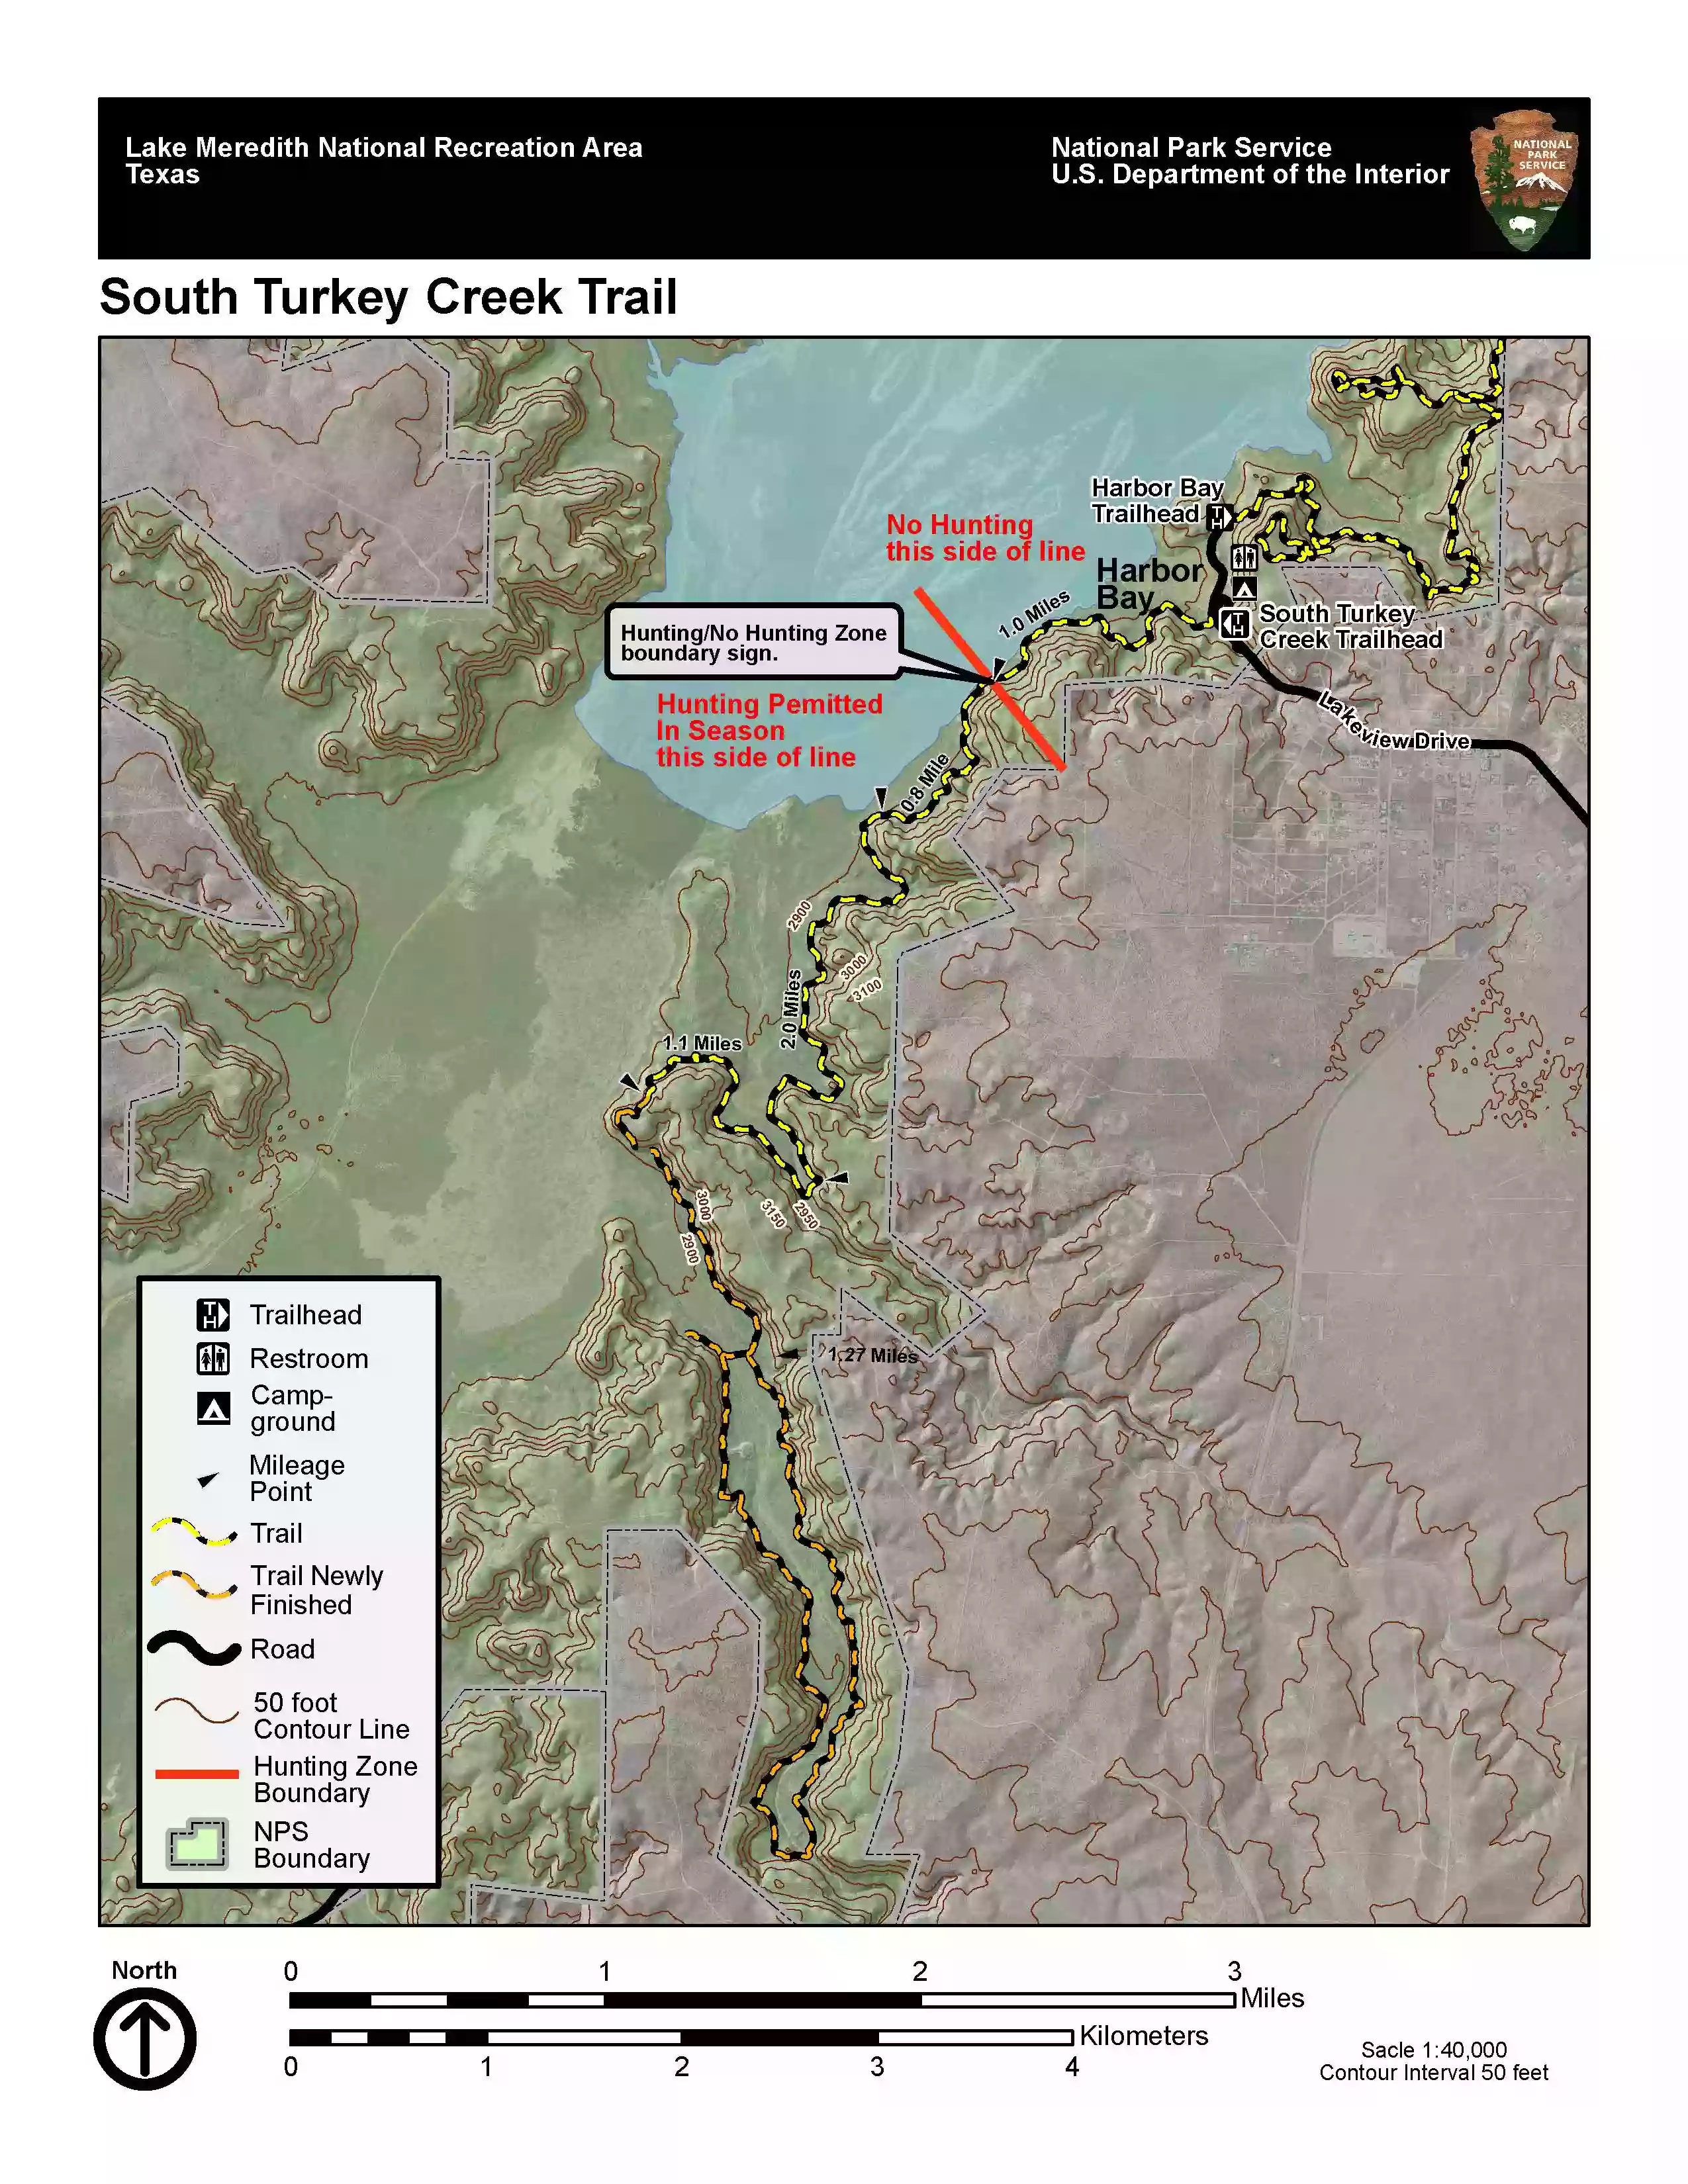 South Turkey Creek Trailhead